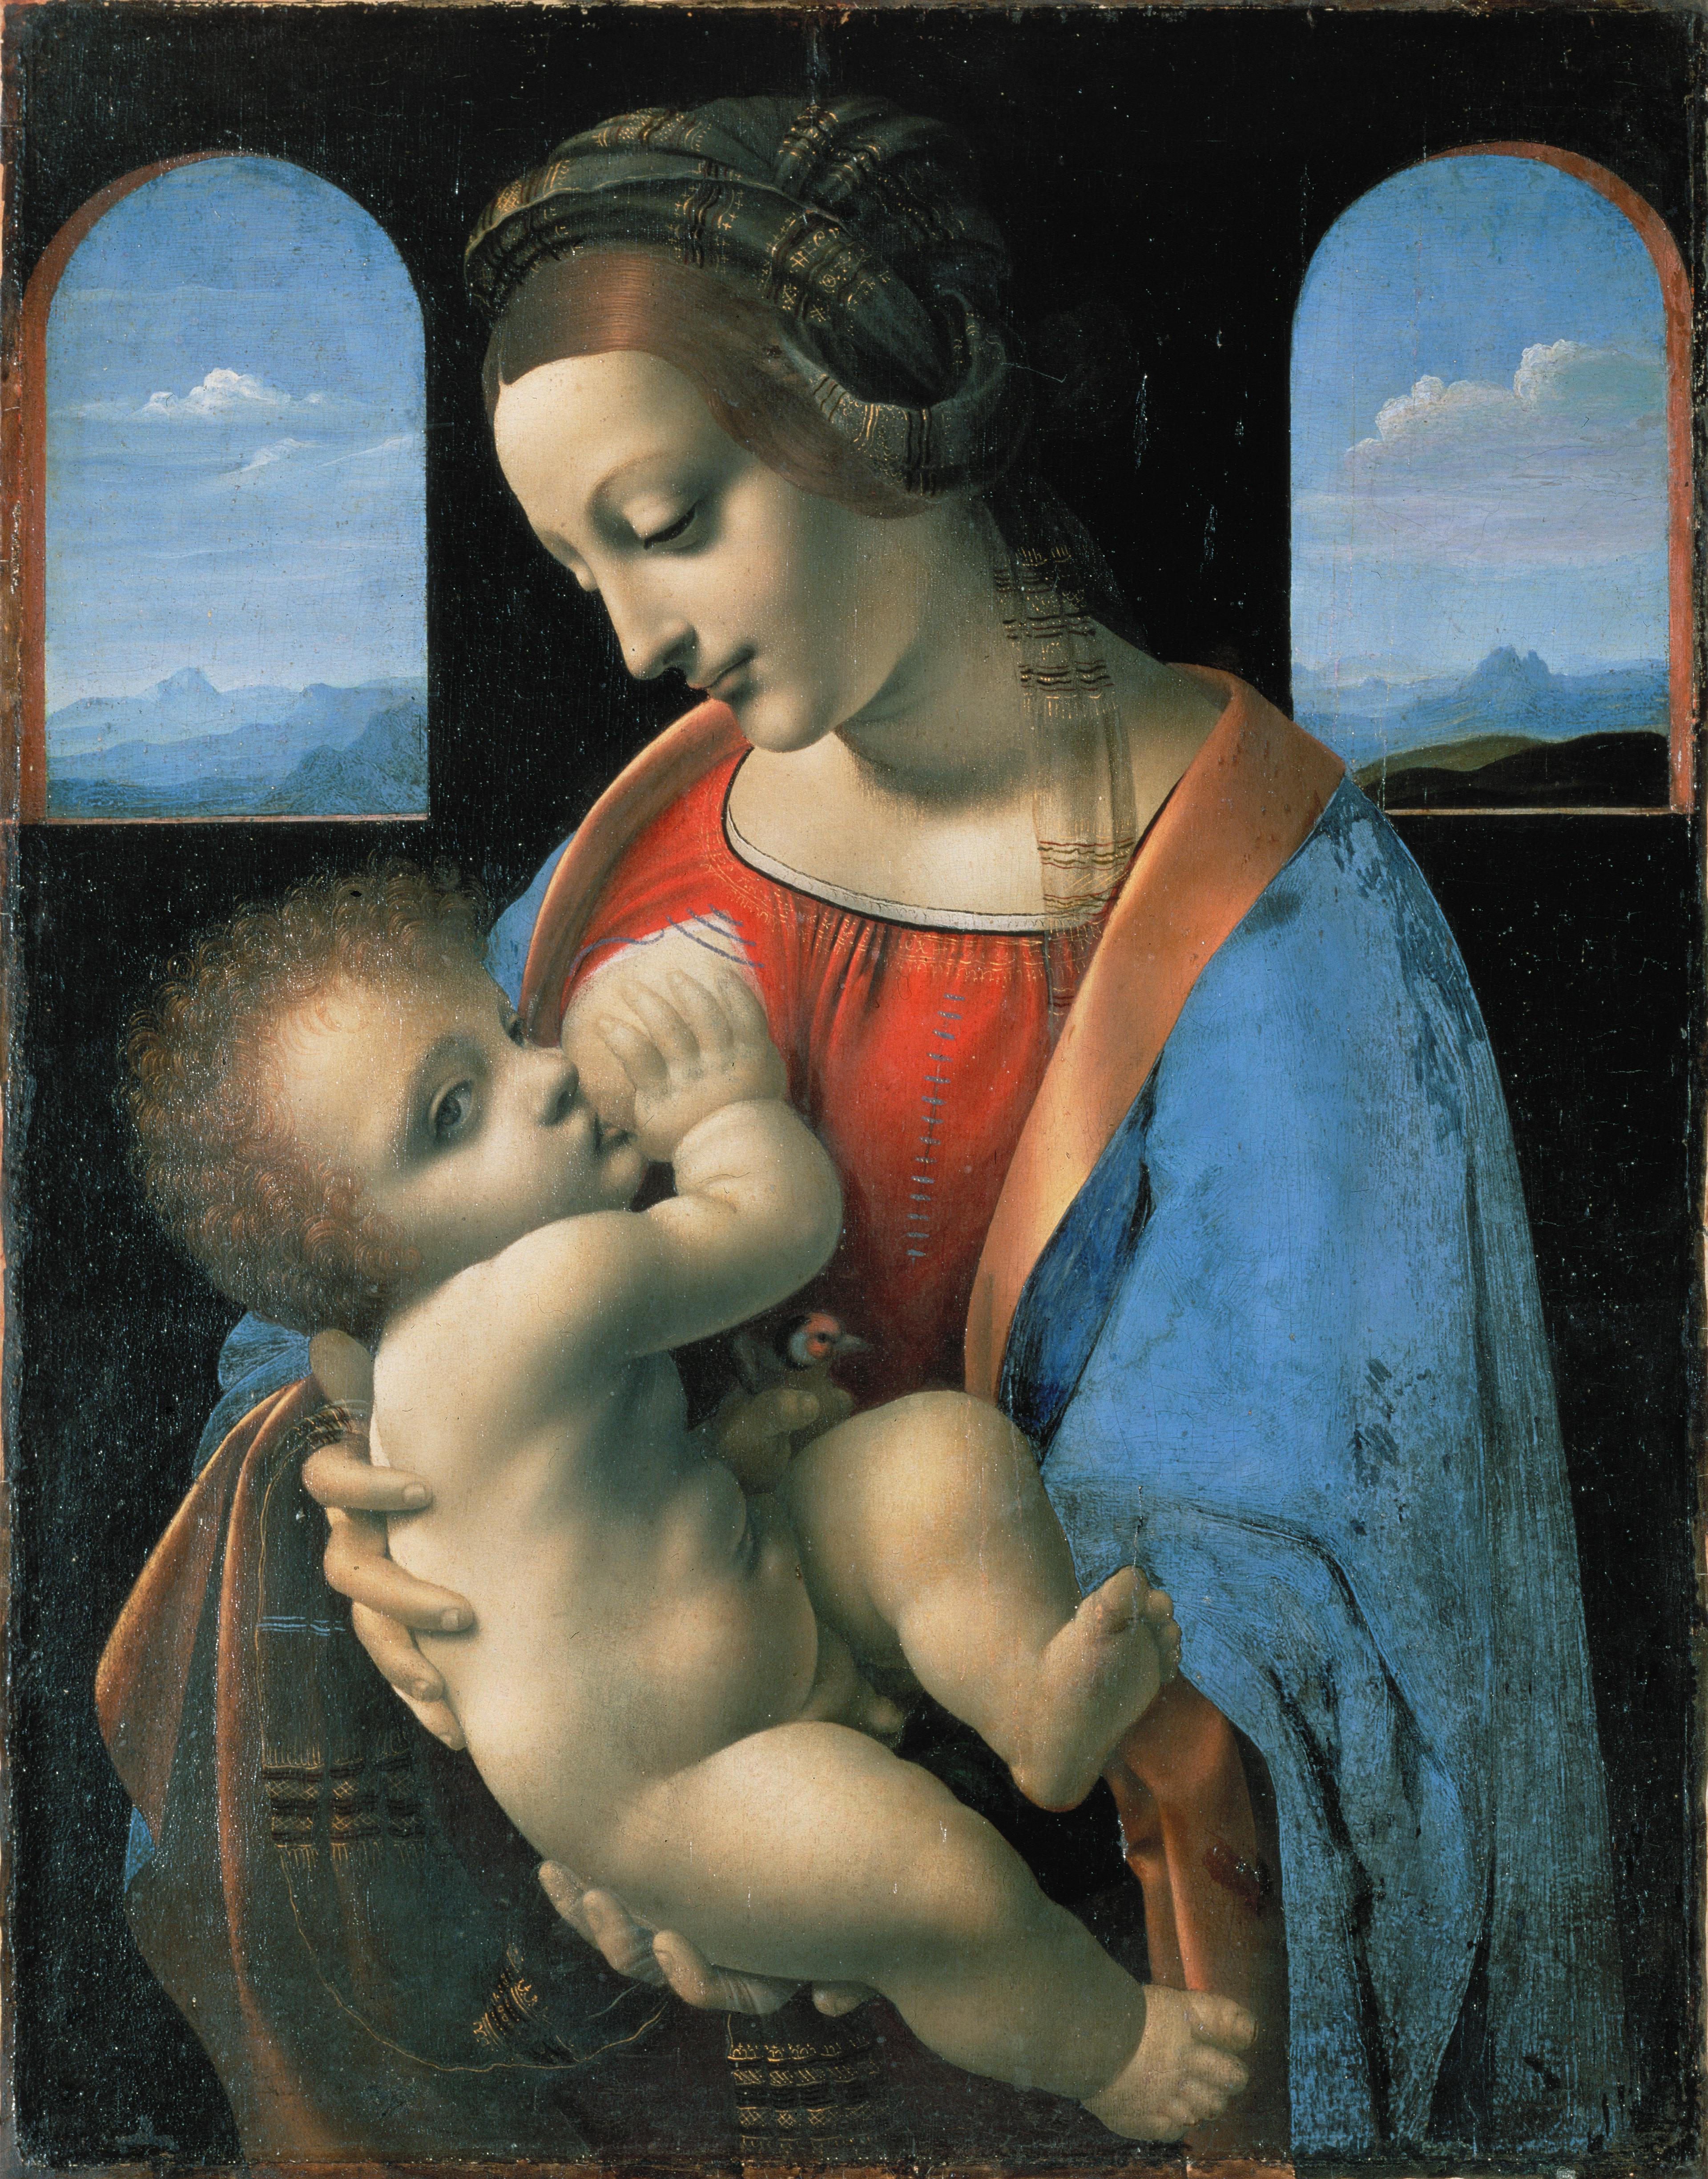 Madonna Litta, attributed to Leonardo da Vinci (mid-1490s). Public Domain.